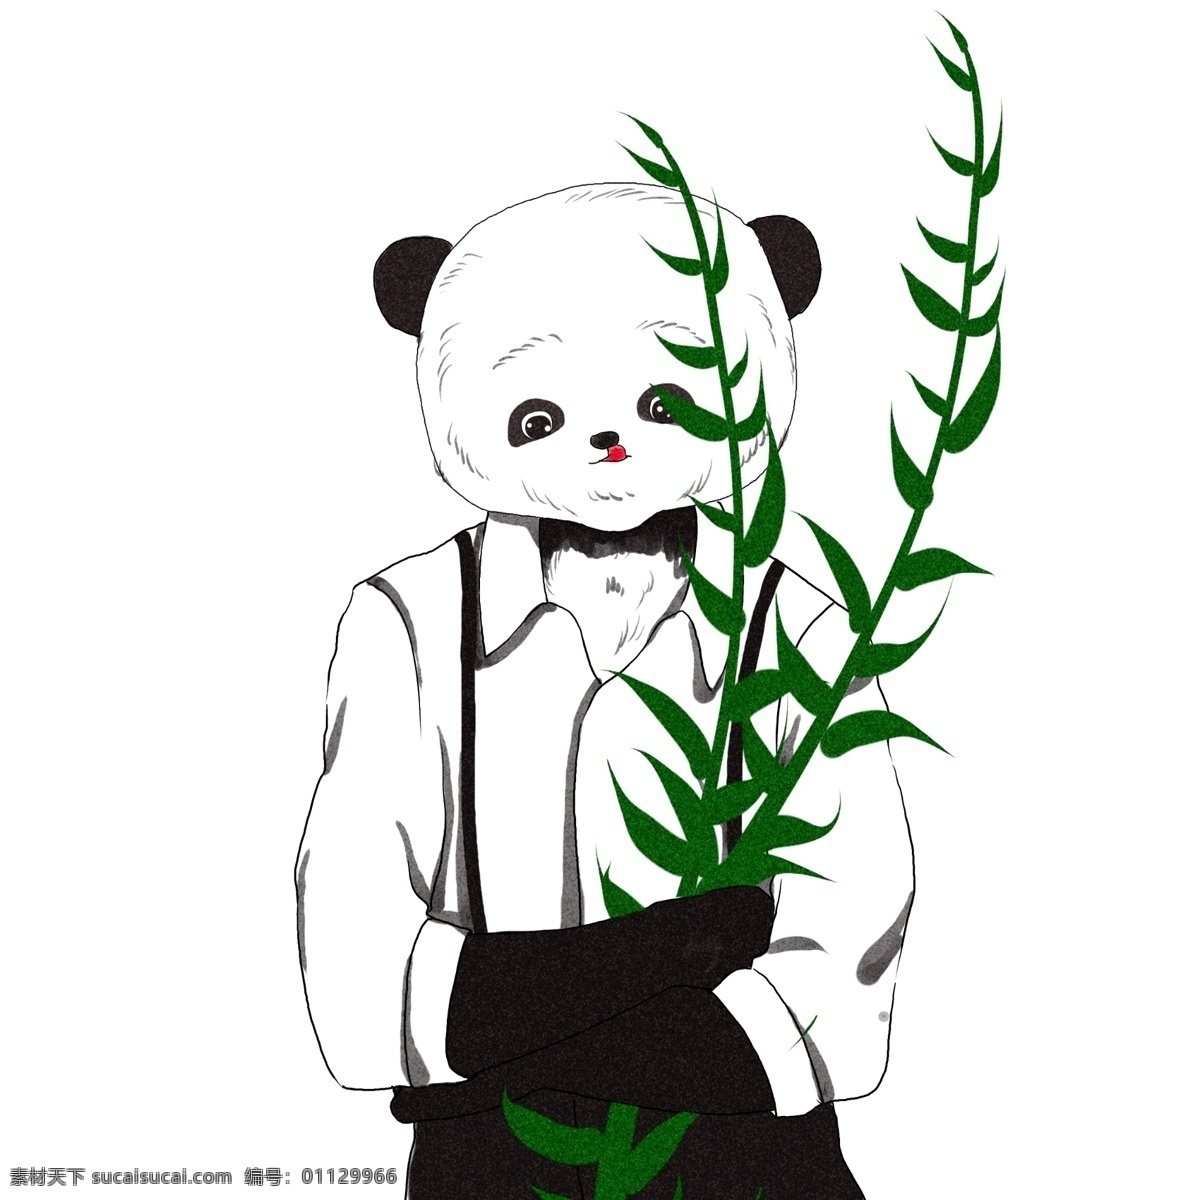 可爱 熊猫 原创 商用 元素 竹子 简约 清新 手绘 板绘 水彩 呆萌 软萌